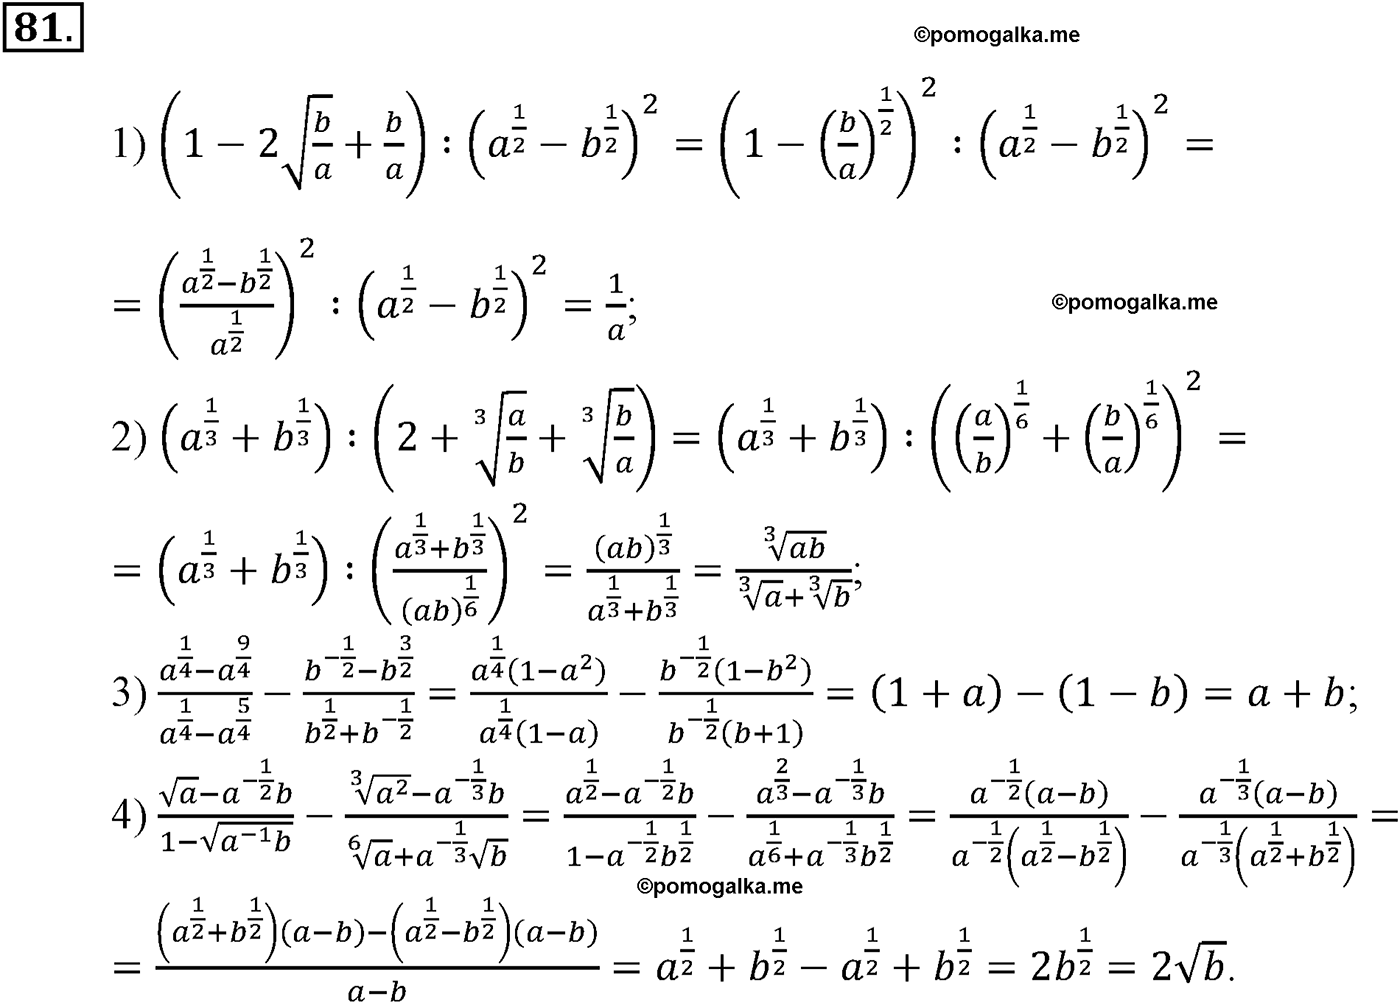 разбор задачи №81 по алгебре за 10-11 класс из учебника Алимова, Колягина